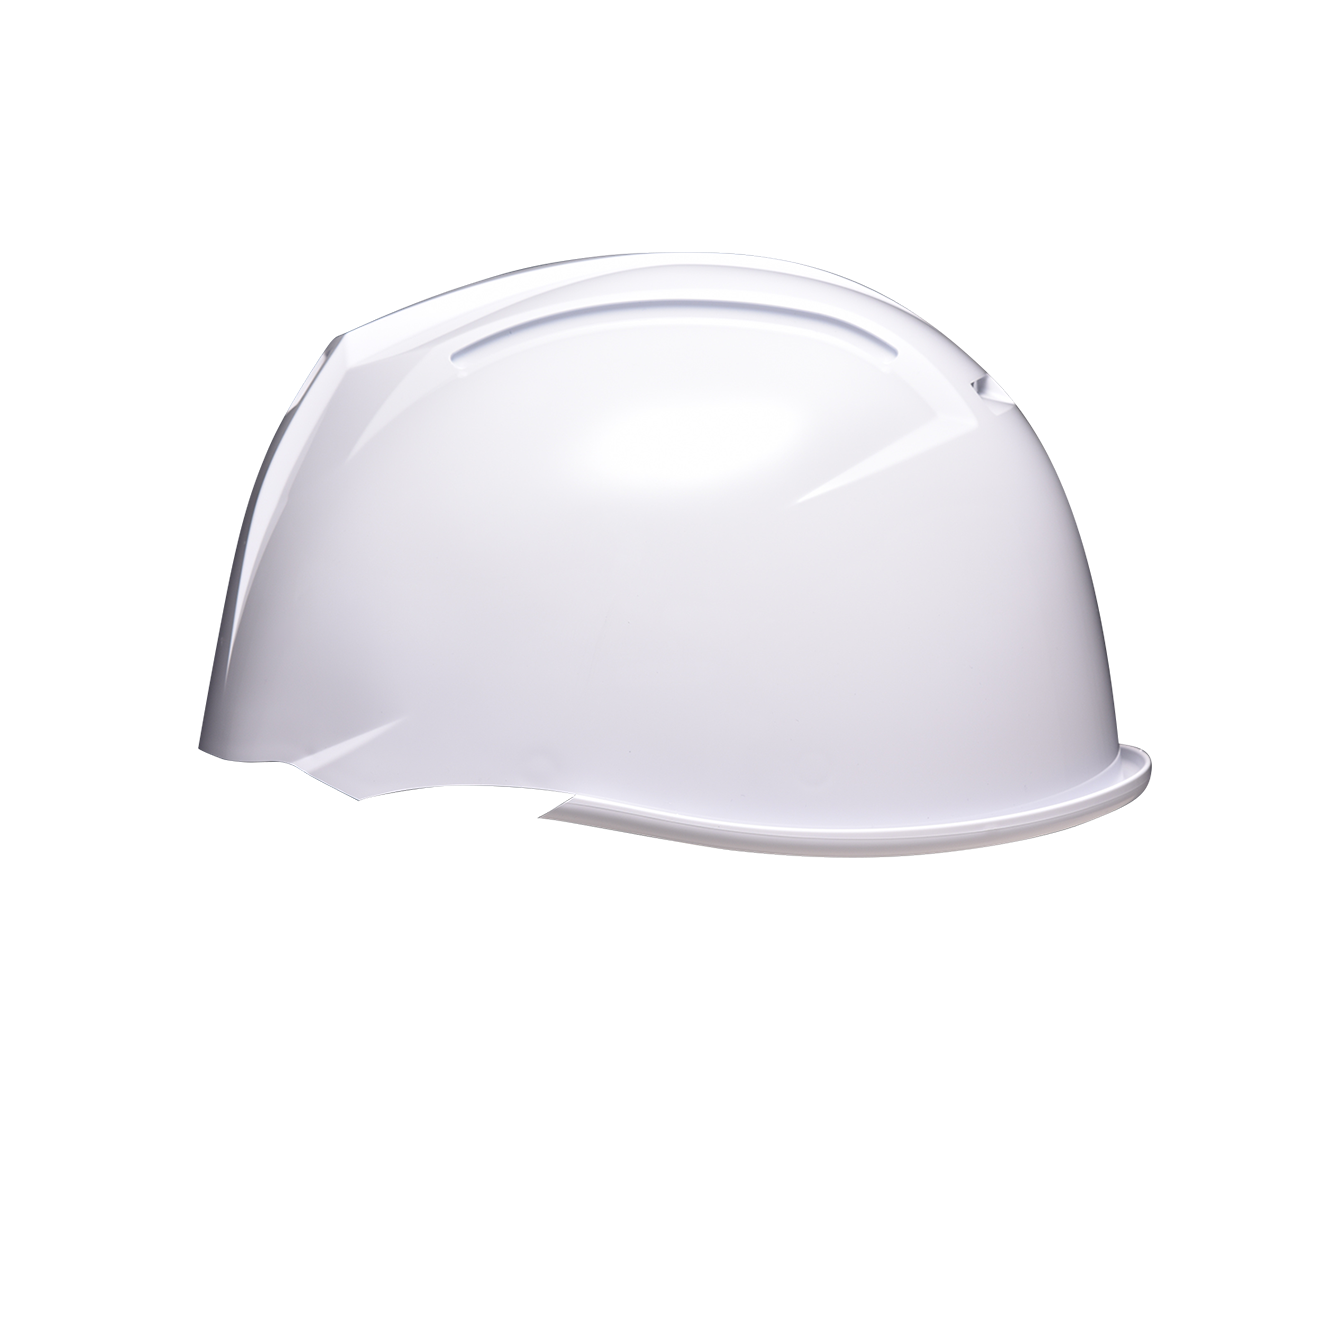 11evo C Kpヘルメットカラー白 ヘルメットの名入れ カスタマイズはhelnet ヘルネット